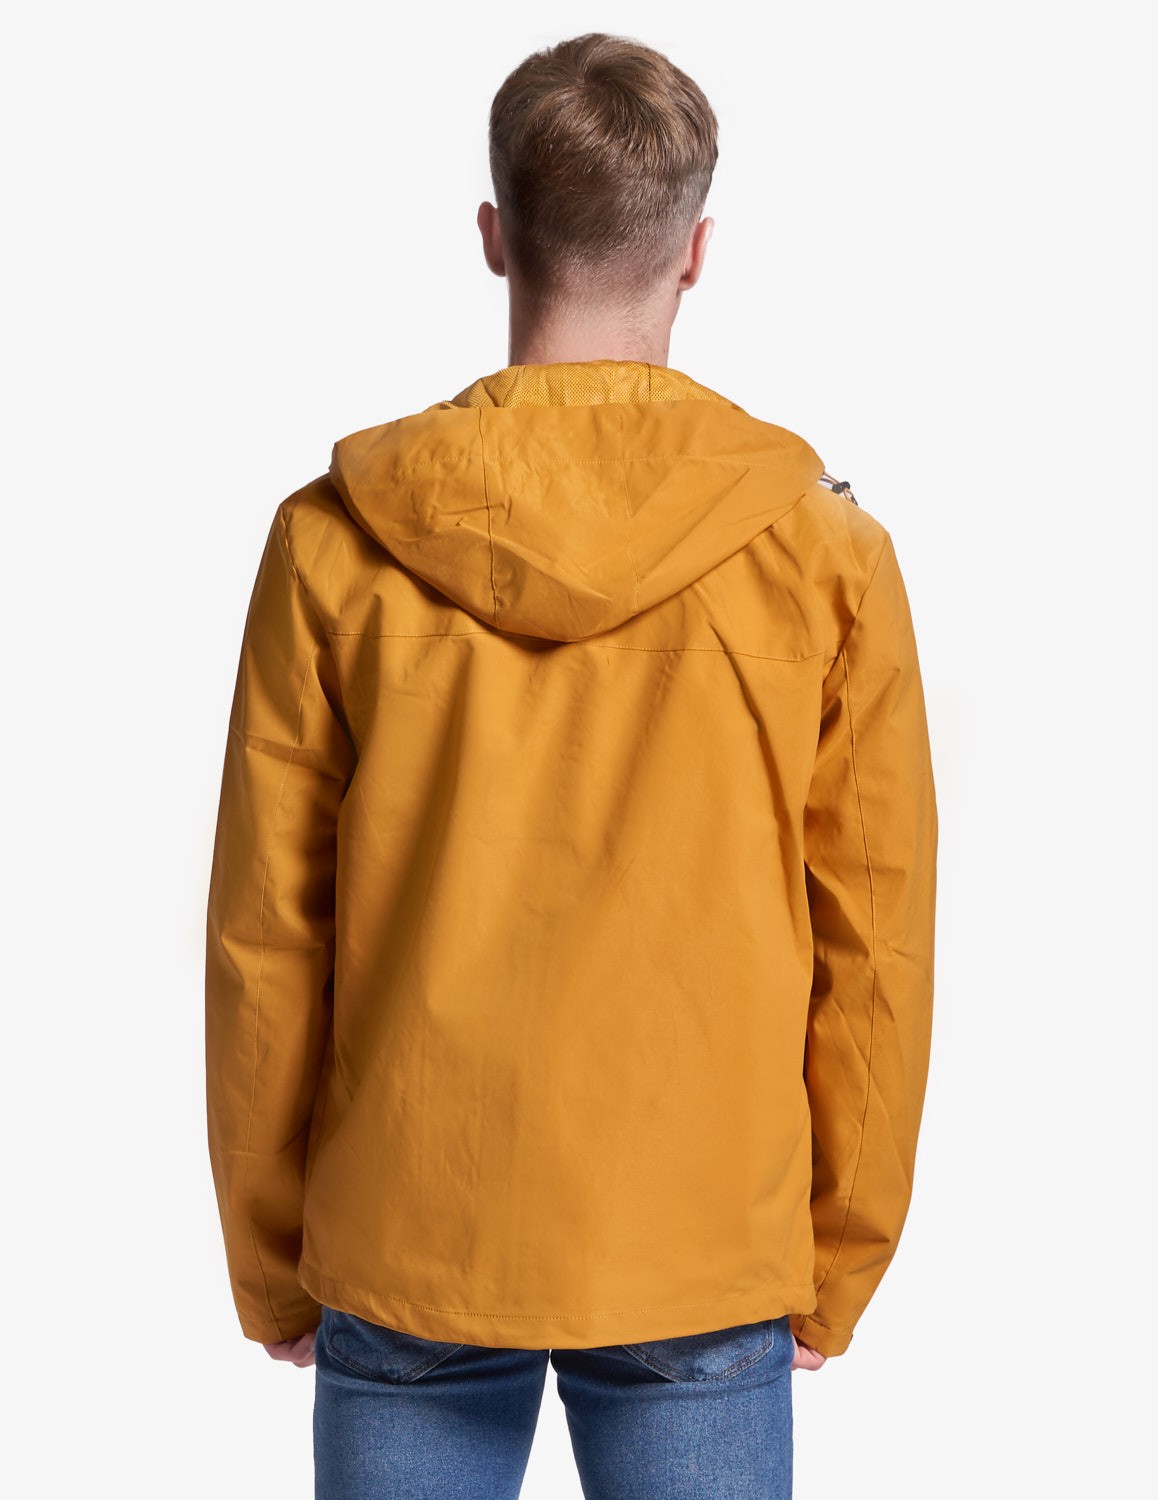 MONTECARLO Jacket yellow